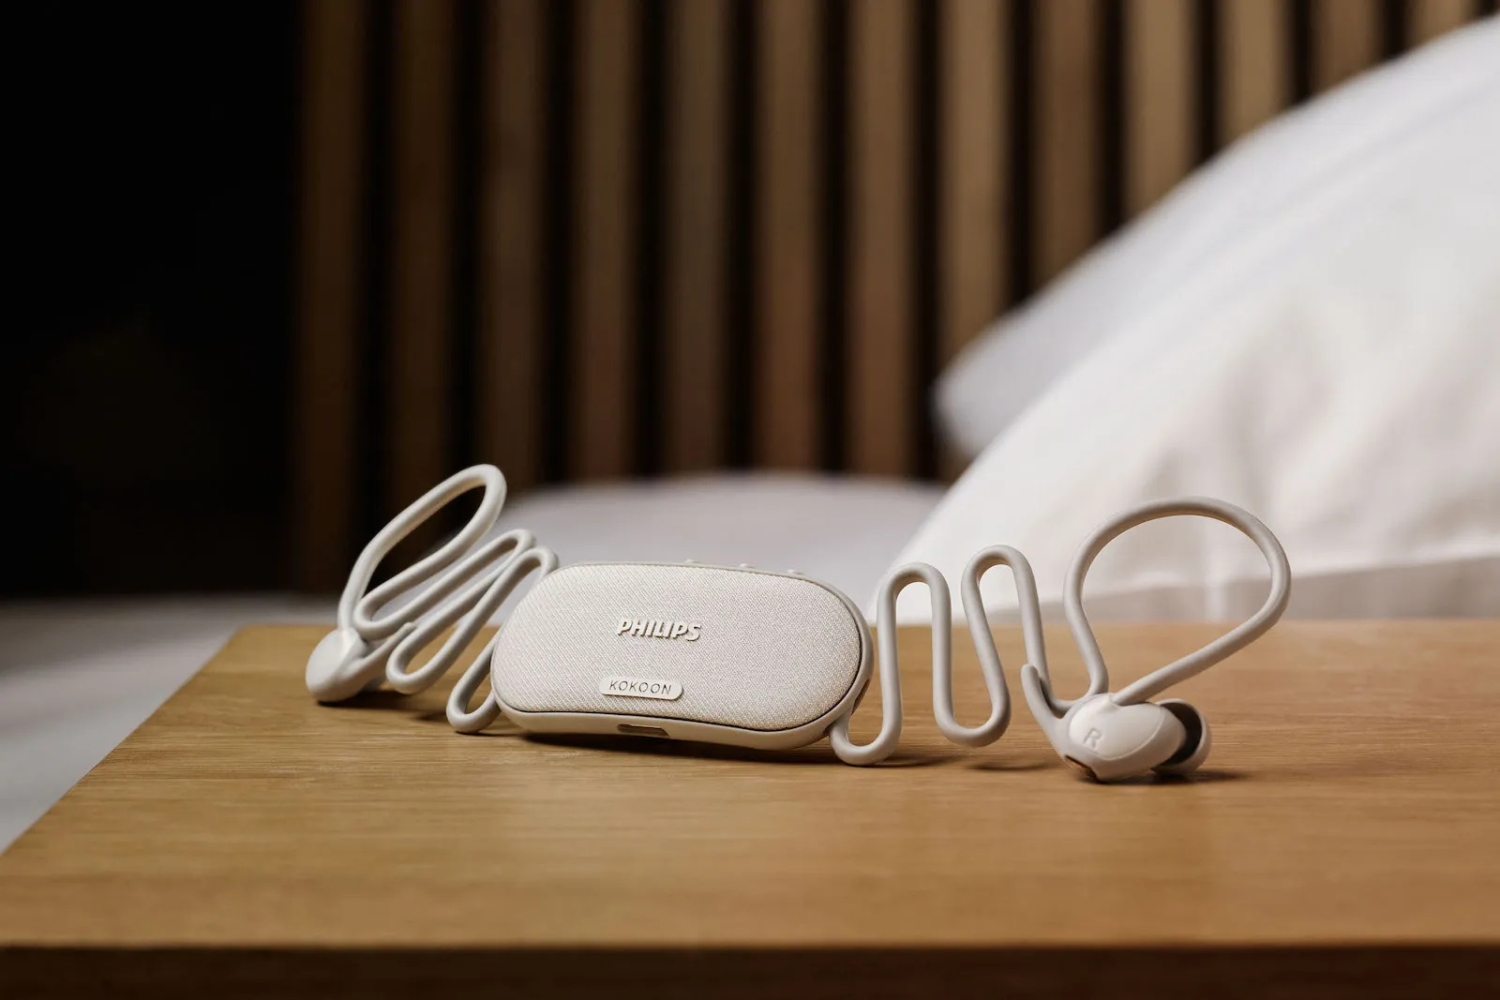 Philips presenta delle cuffie ergonomiche per il sonno che aiutano ad addormentarsi più velocemente e tracciano i modelli del sonno